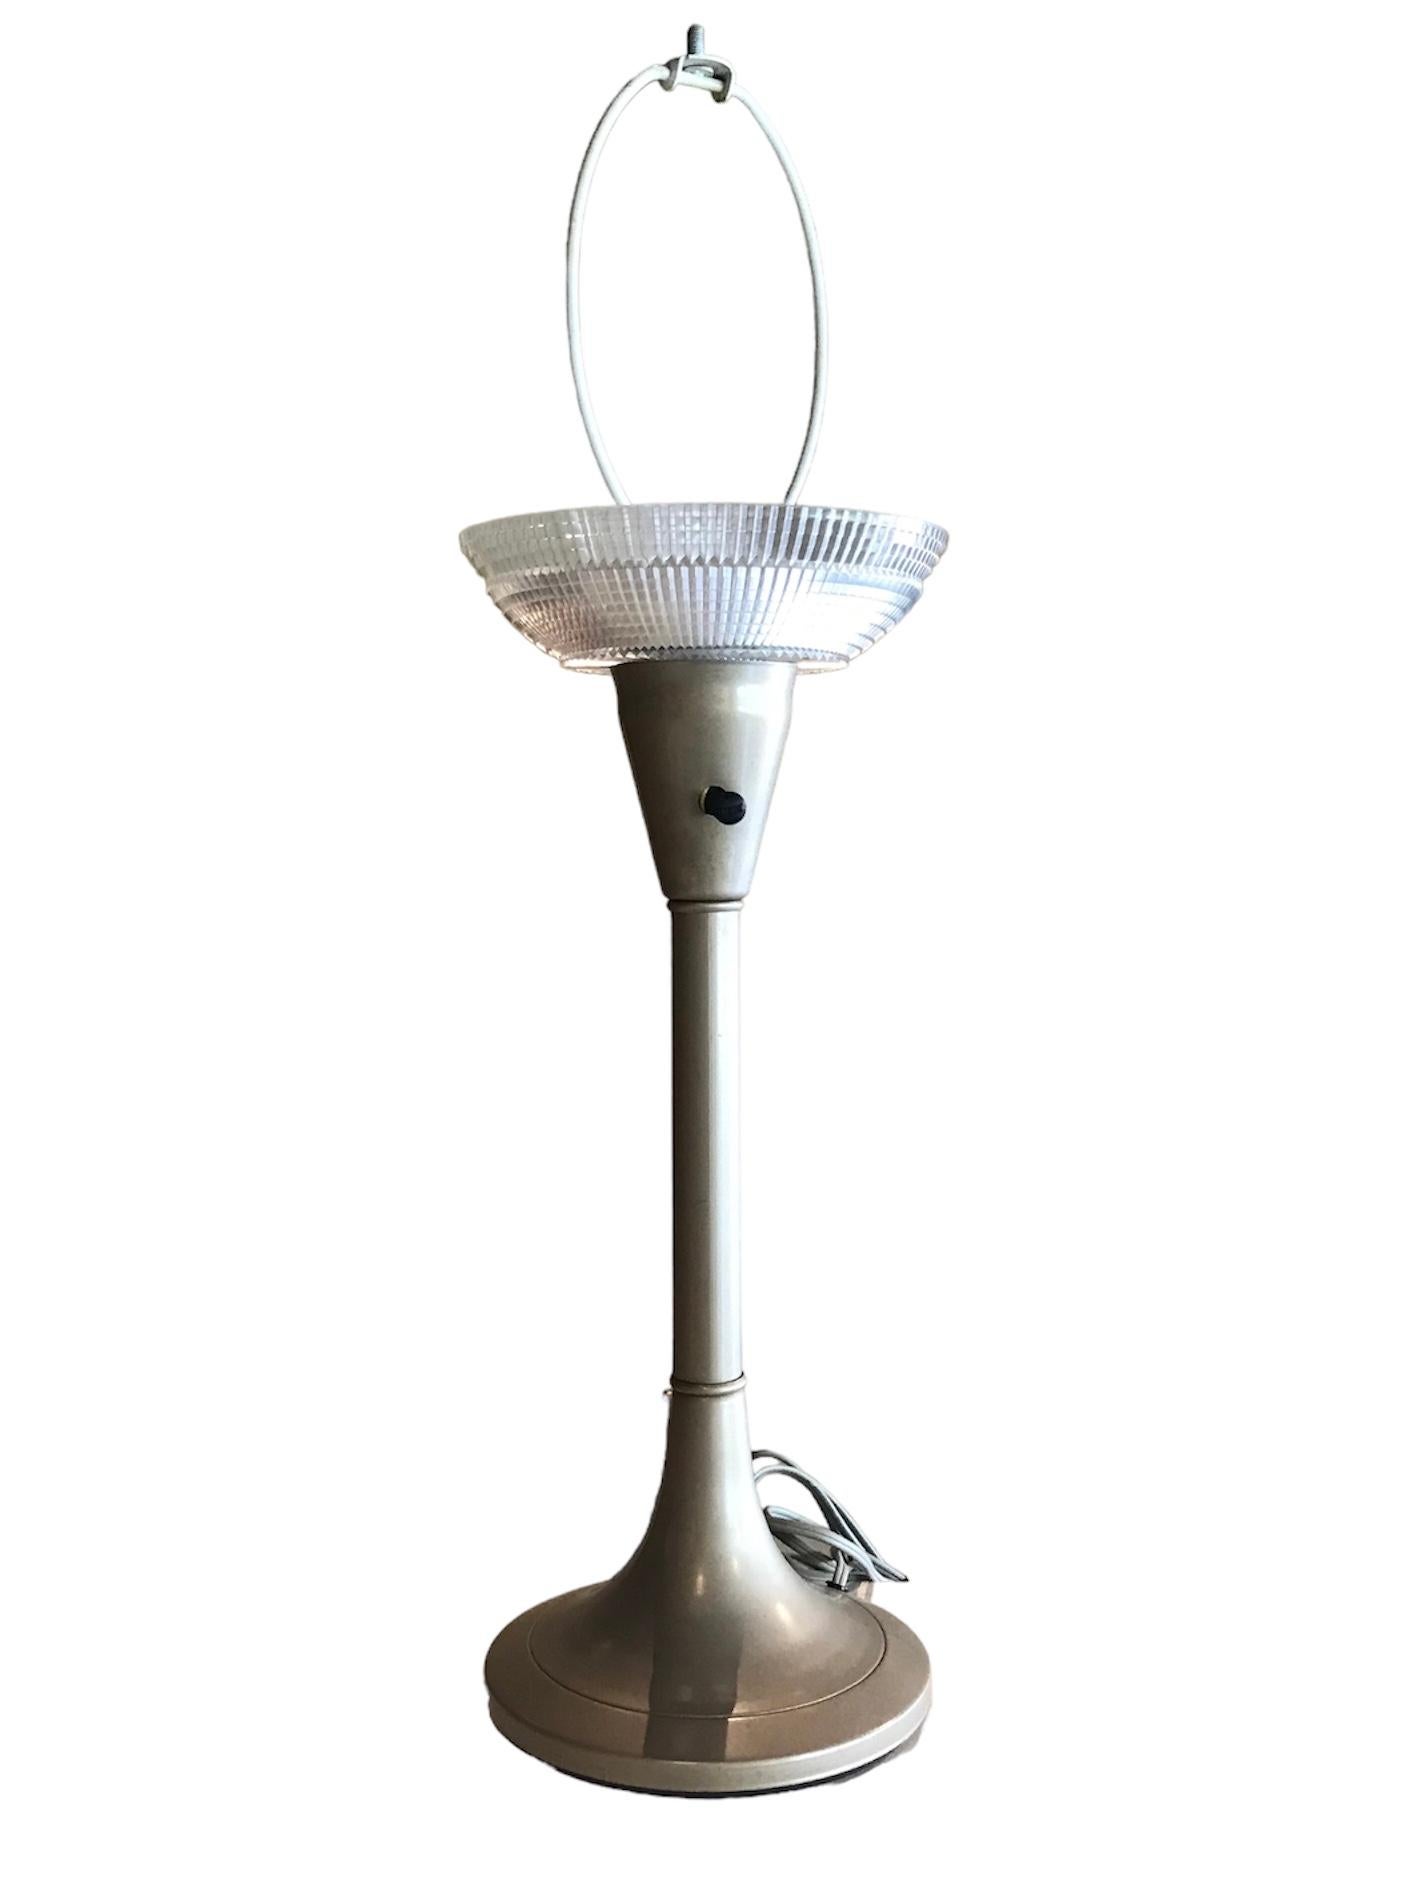 Ein klassischer Mid Century Modern Gerald Thurston Designstil für Lightolier Schreibtischlampe.  Mit seinem stromlinienförmigen Metallgehäuse auf Tulpenbasis und dem eingebauten klaren Kunststoffdiffusor in Form eines geschliffenen Kristalls kann er